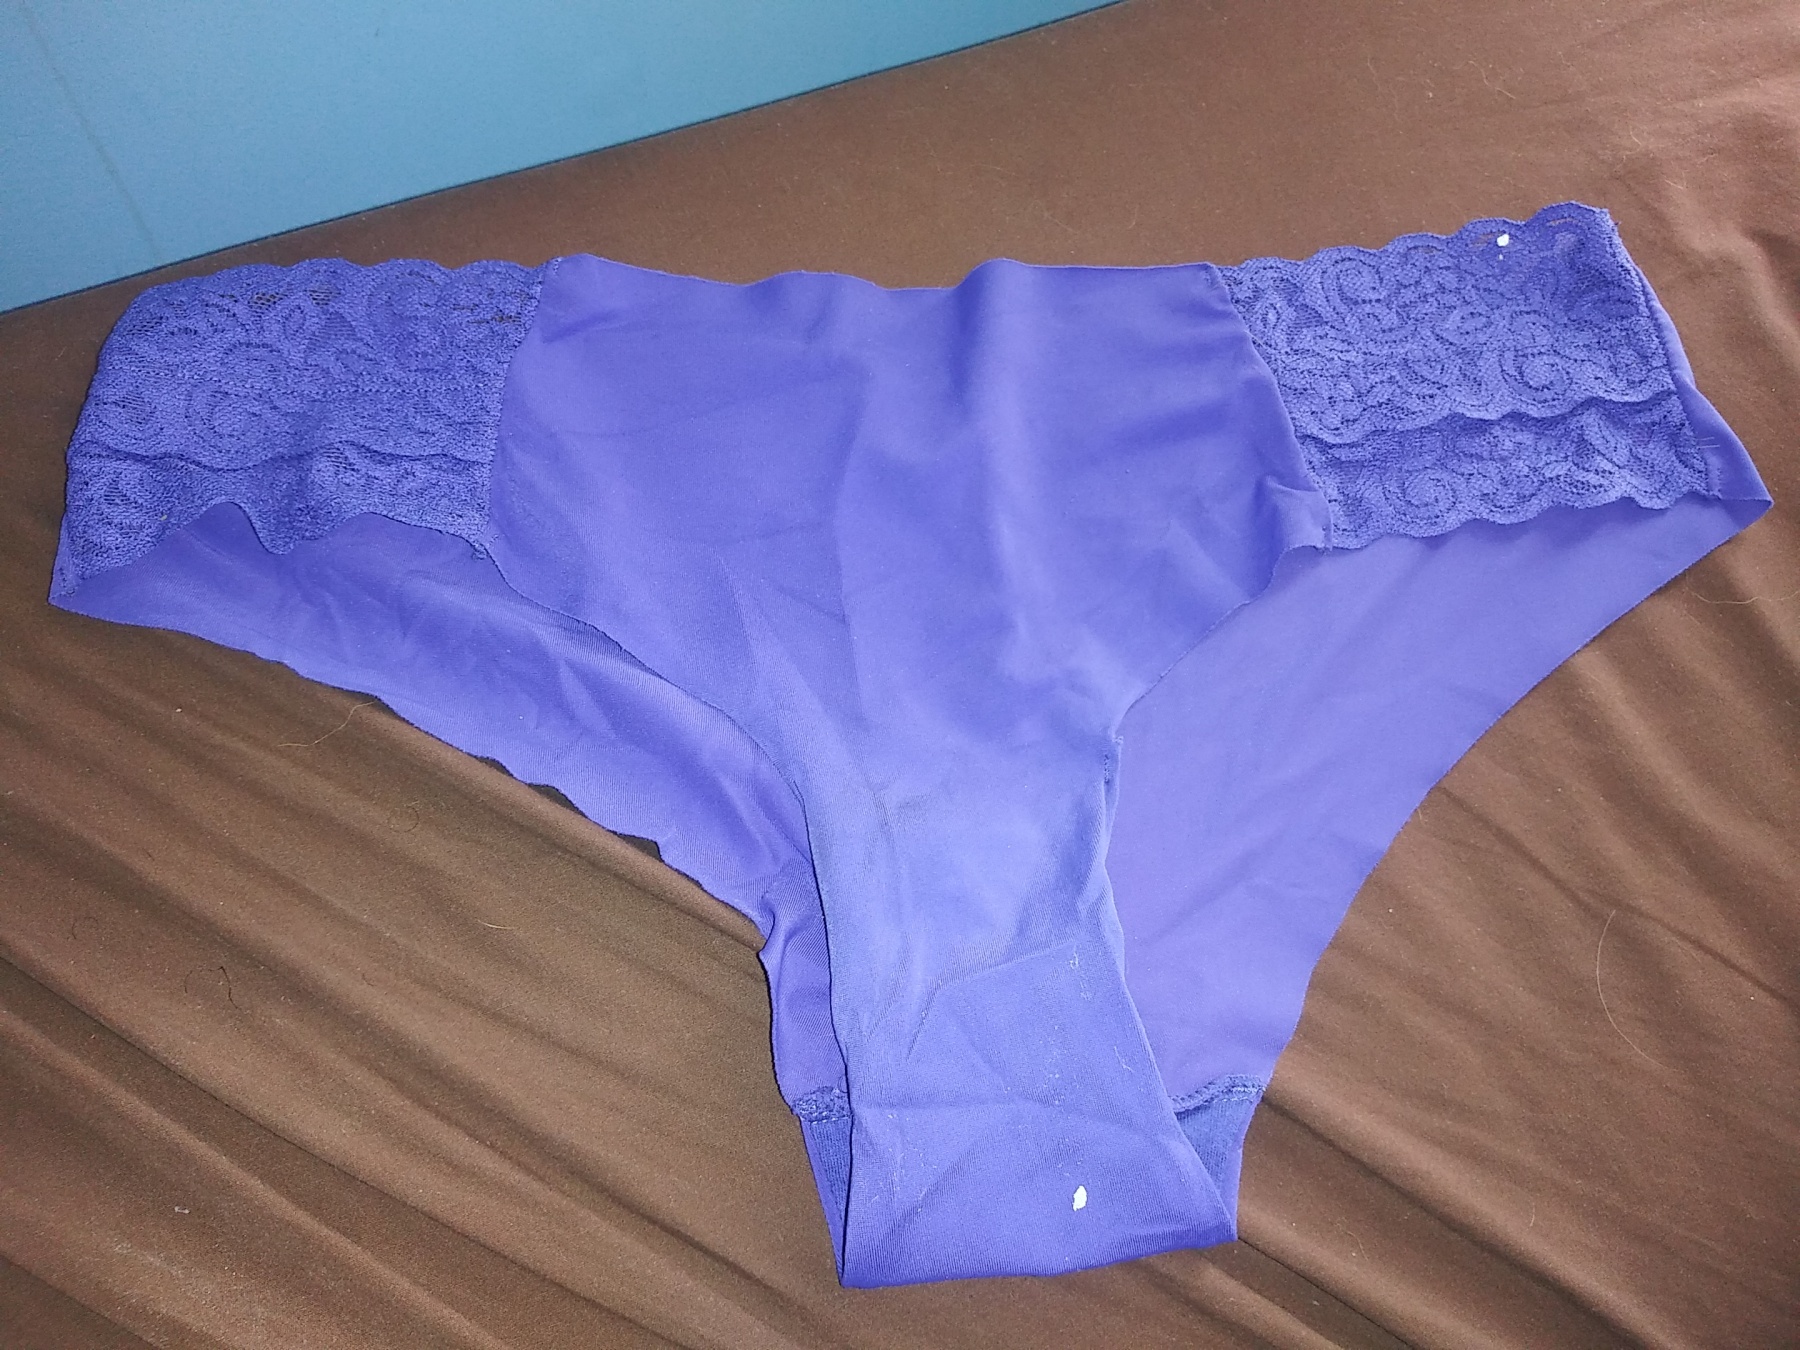 Purple sweet panties